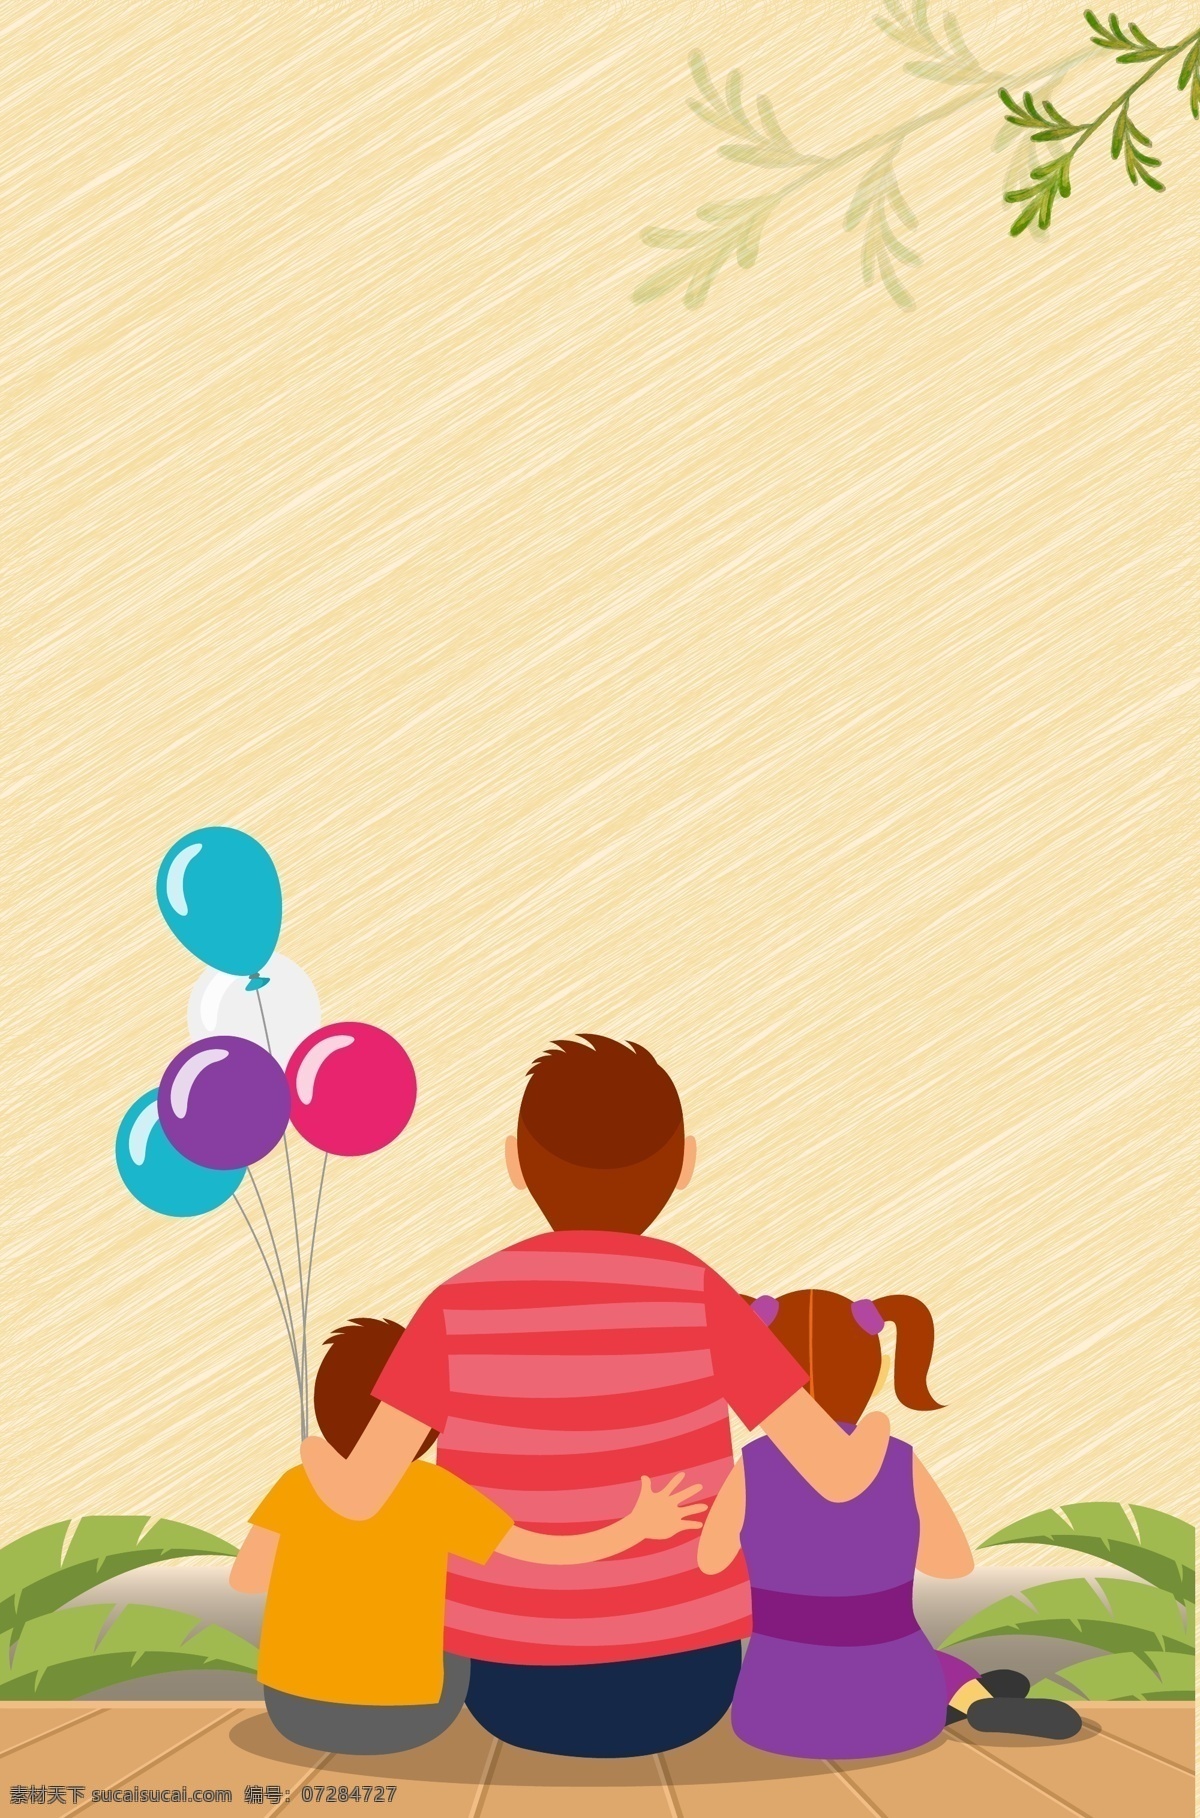 父亲节人物 父亲节元素 父亲节素材 父亲节设计 父亲 孩子 气球 矢量气球 卡通气球 气球背景 气球插画 亲子游戏 亲子活动 亲子互动 折纸立体背景 父亲抱女孩 父亲节 人物图库 生活人物